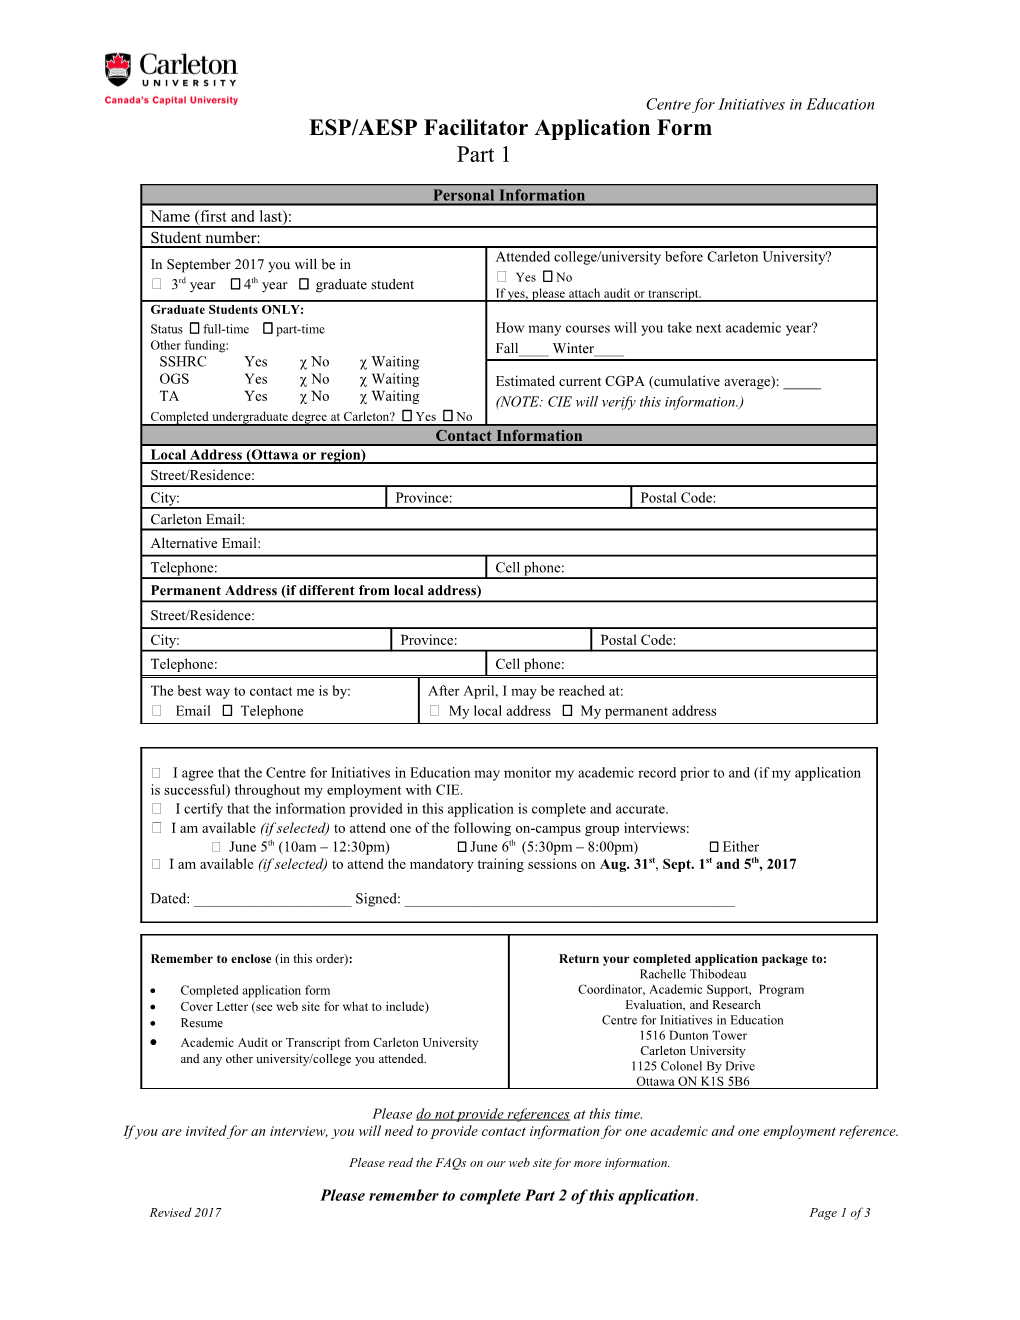 CIE Facilitator Application Form